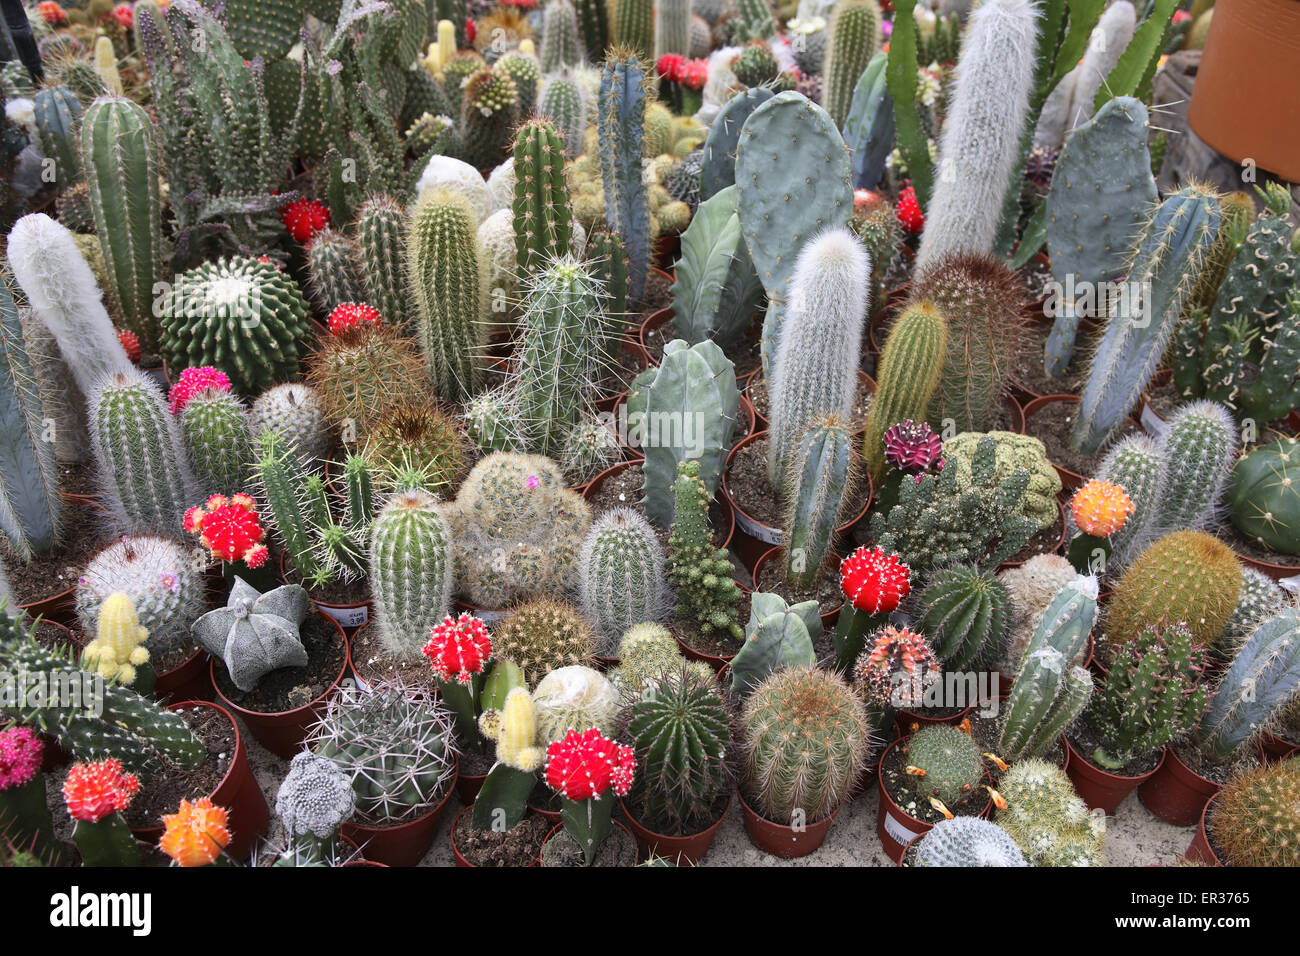 DEU, Germany, Ruhr Area, blooming cactuses in a market garden.  DEU, Deutschland, bluehende Kakteen in einem Gartencenter. Stock Photo